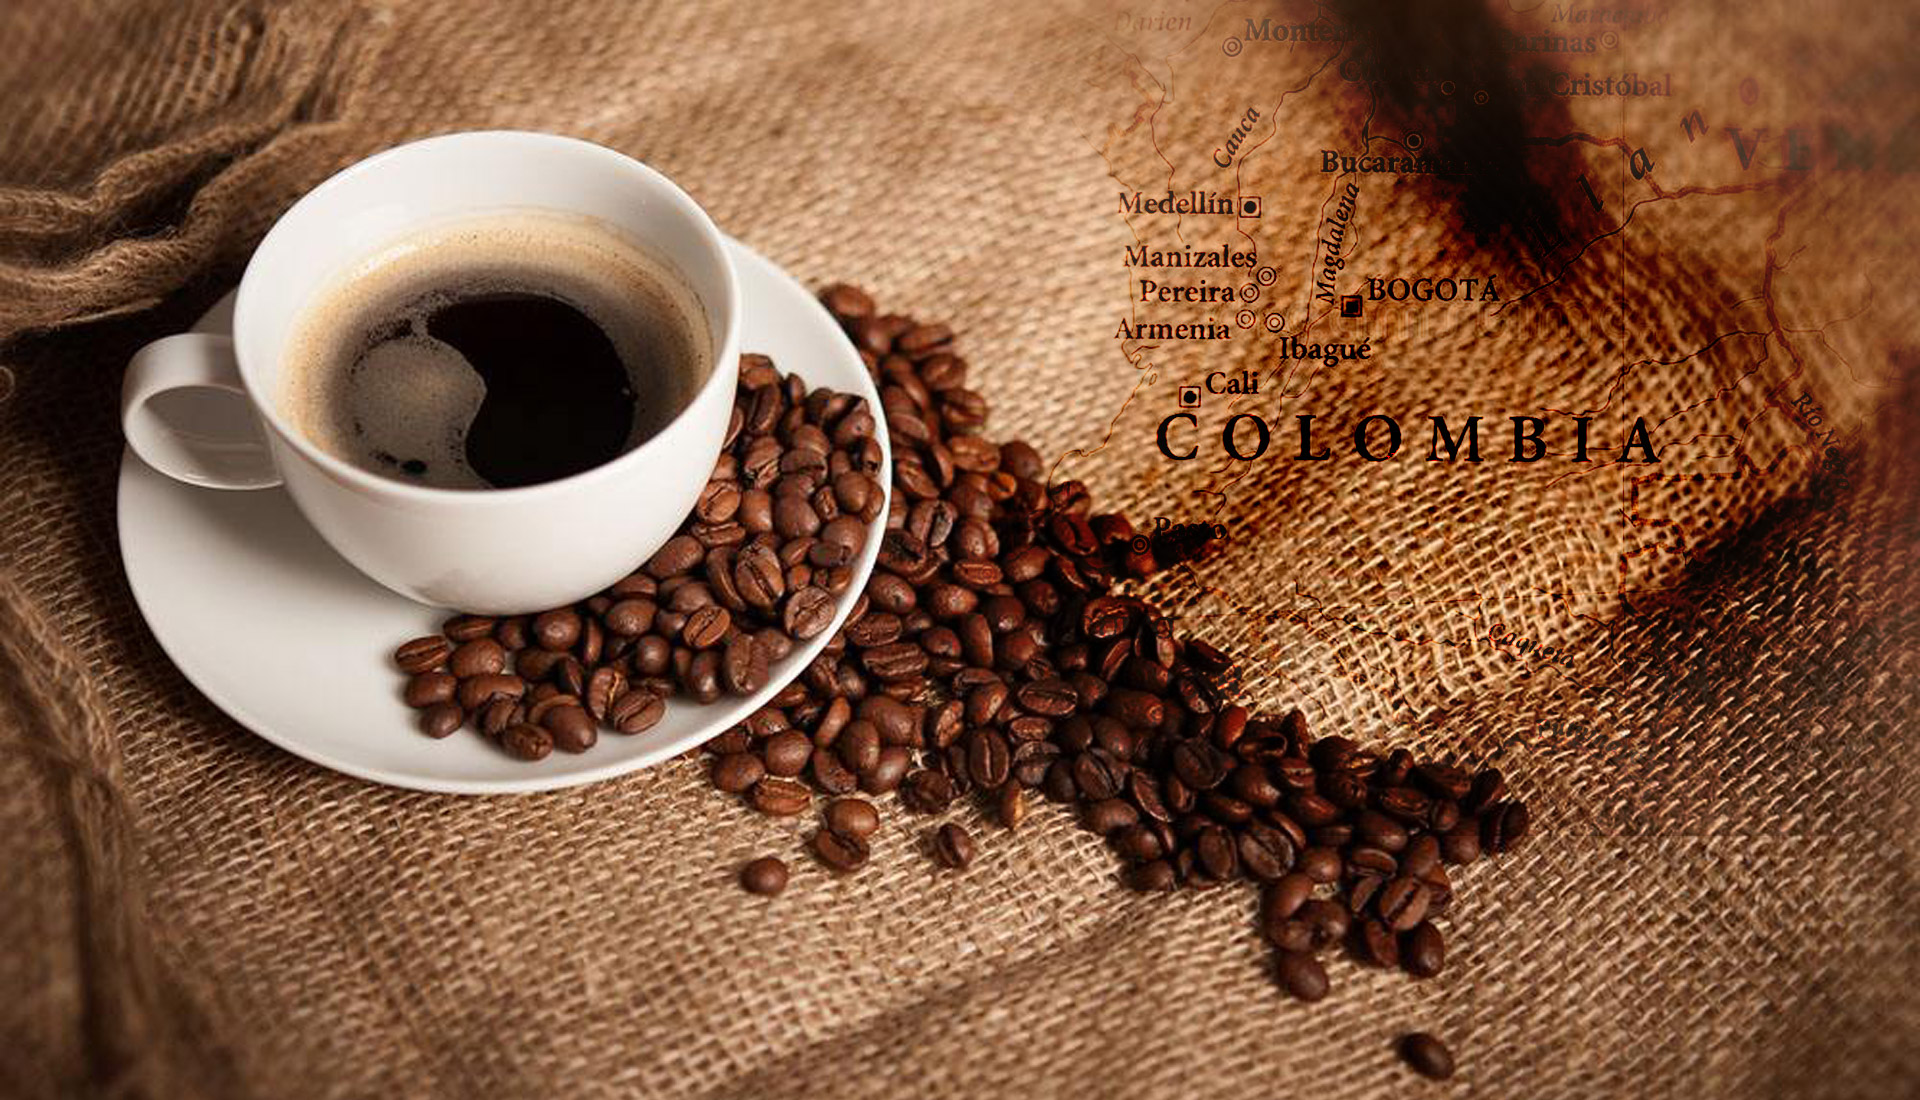 进口咖啡包装设计，进口咖啡品牌设计，进口食品包装策划设计，进口饮料包装设计，进口咖啡营销策划，进口食品包装设计公司，进口咖啡包装设计公司